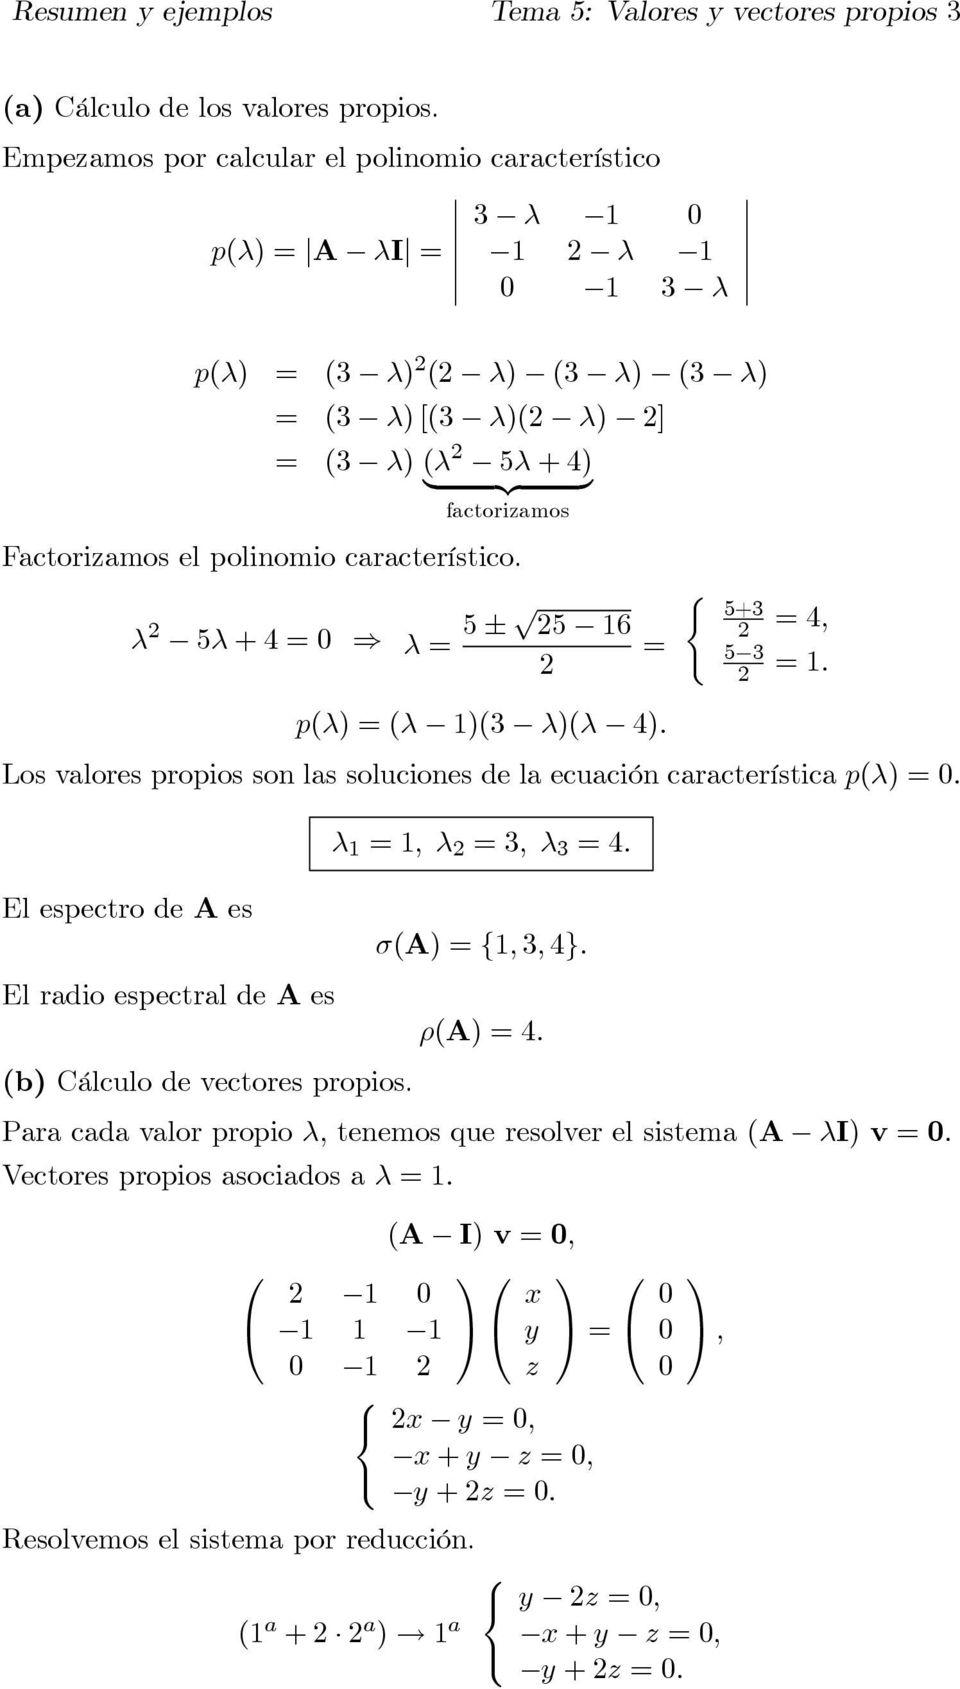 son las soluciones de la ecuación característica p(λ) El espectro de A es λ λ 3 λ 3 4 σ(a) { 3 4} El radio espectral de A es ρ(a) 4 (b) Cálculo de vectores propios Para cada